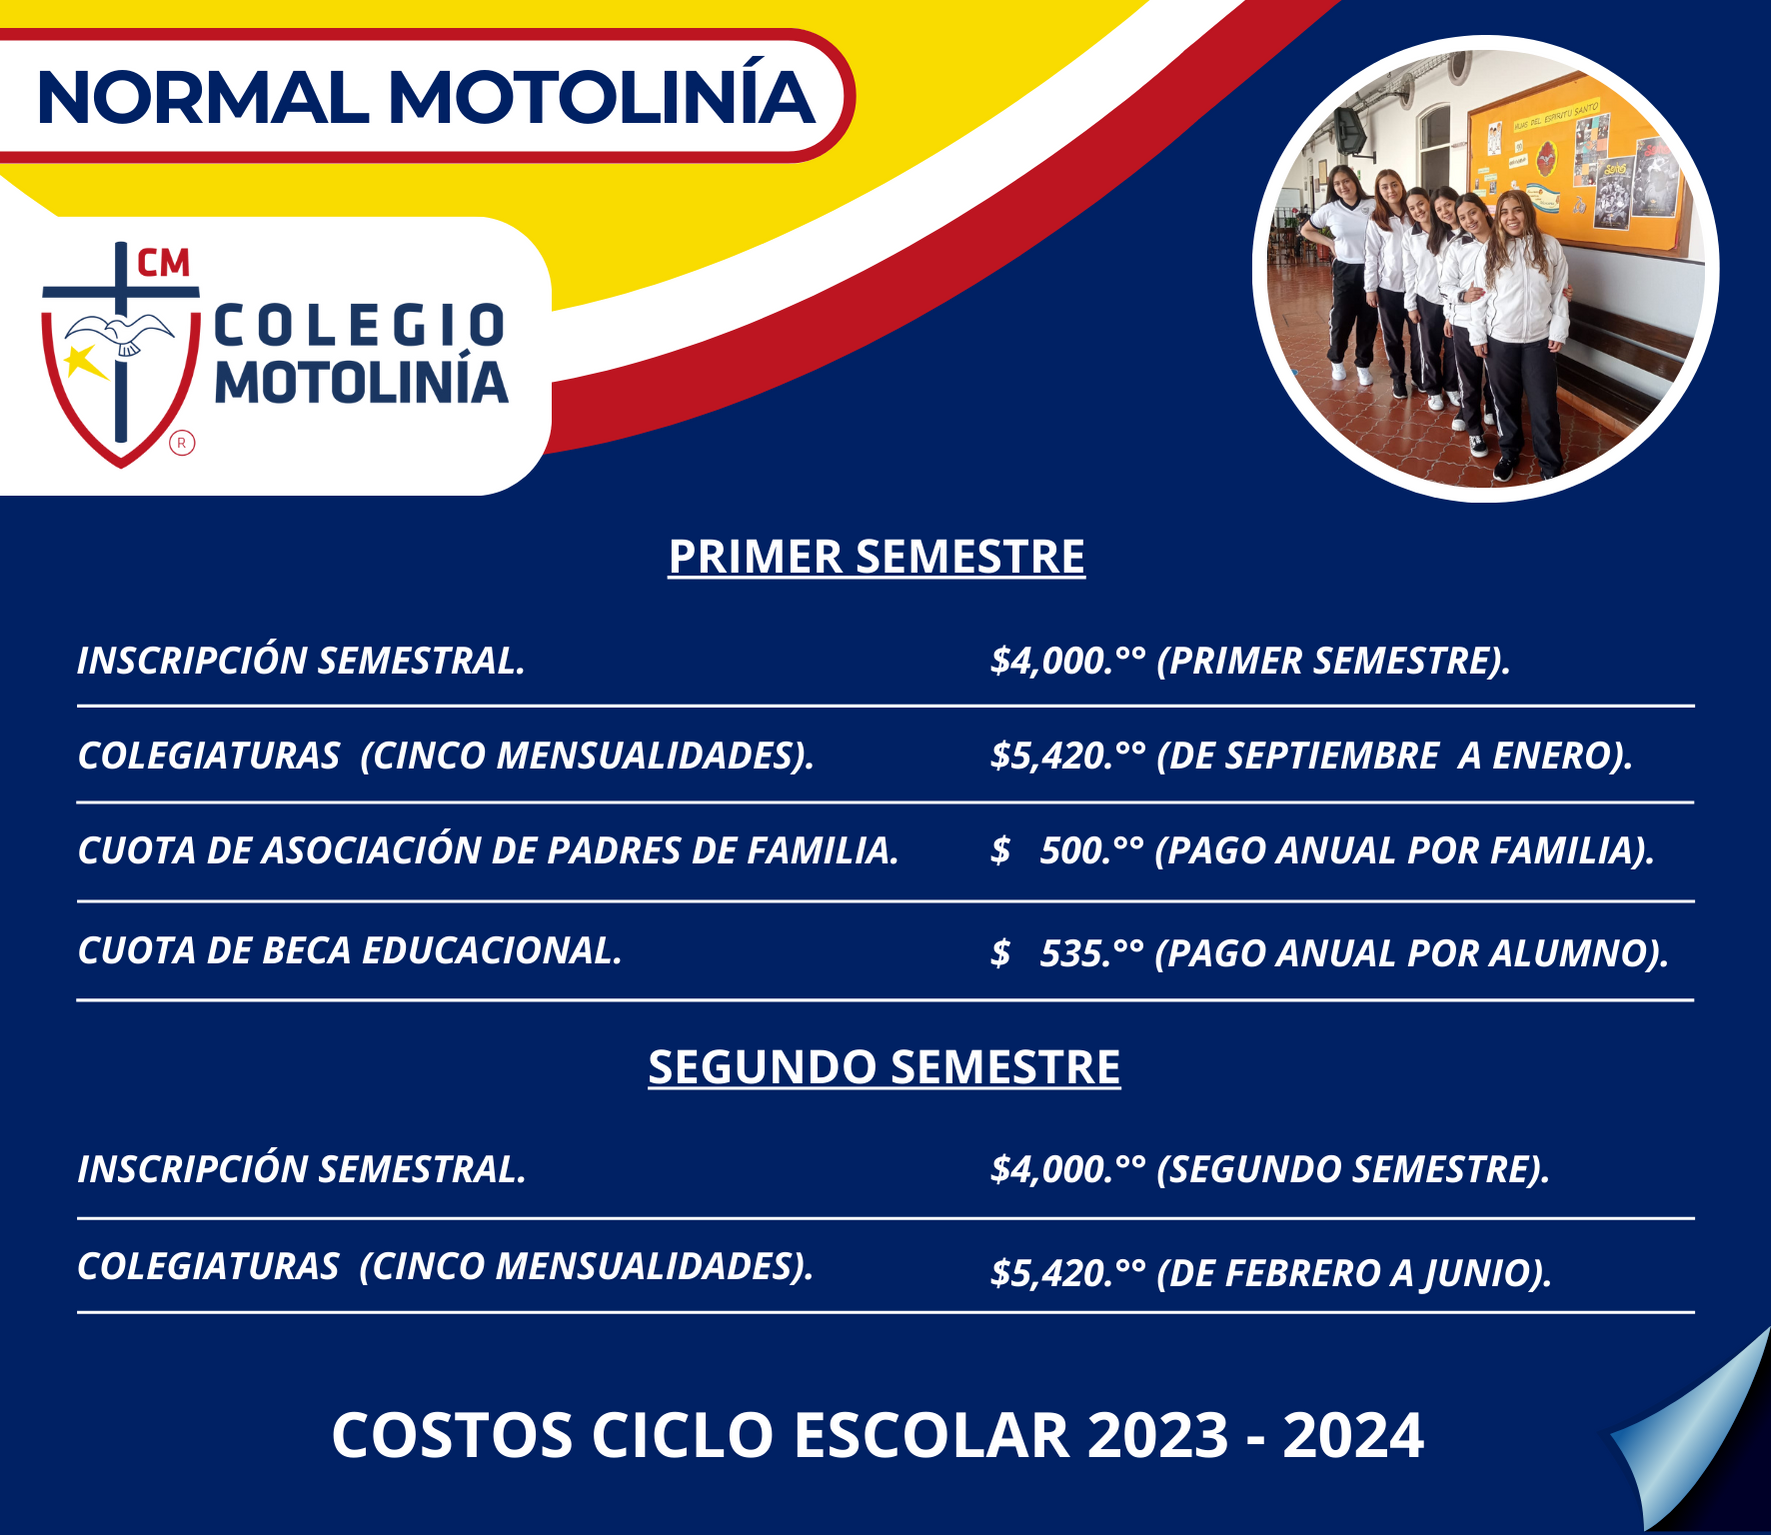 COSTOS NORMAL MOTOLINÍA, CICLO 2023-2024